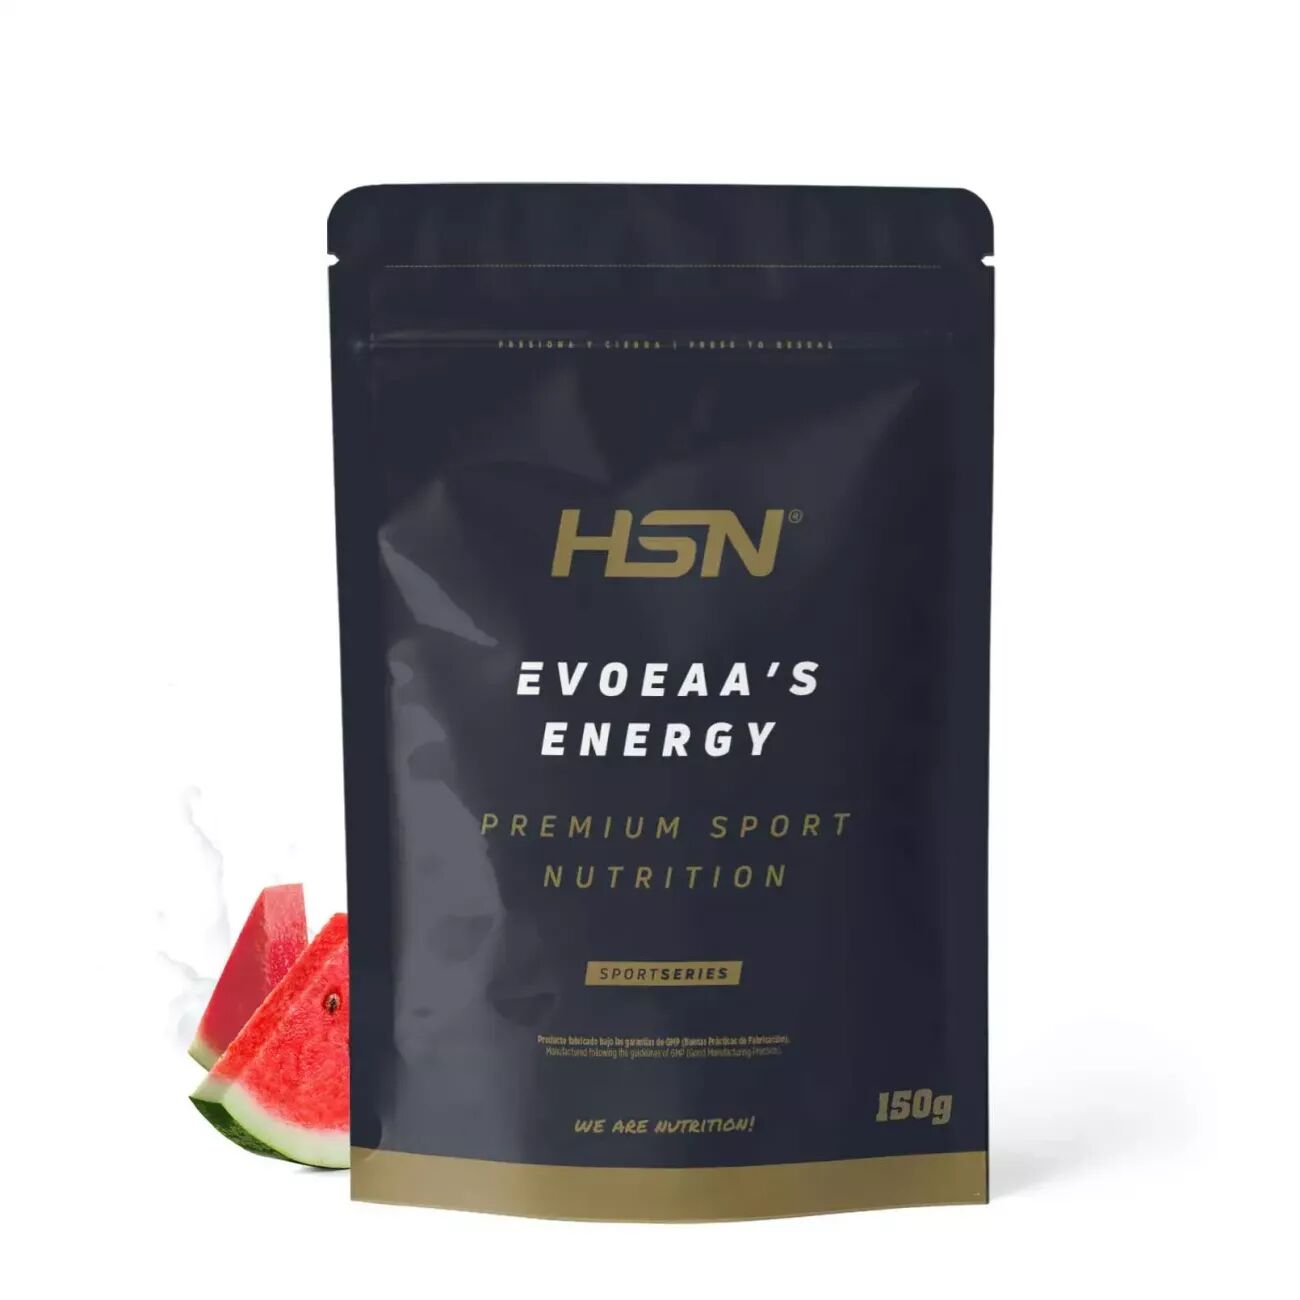 HSN Evoeaa's energy 150g sandía